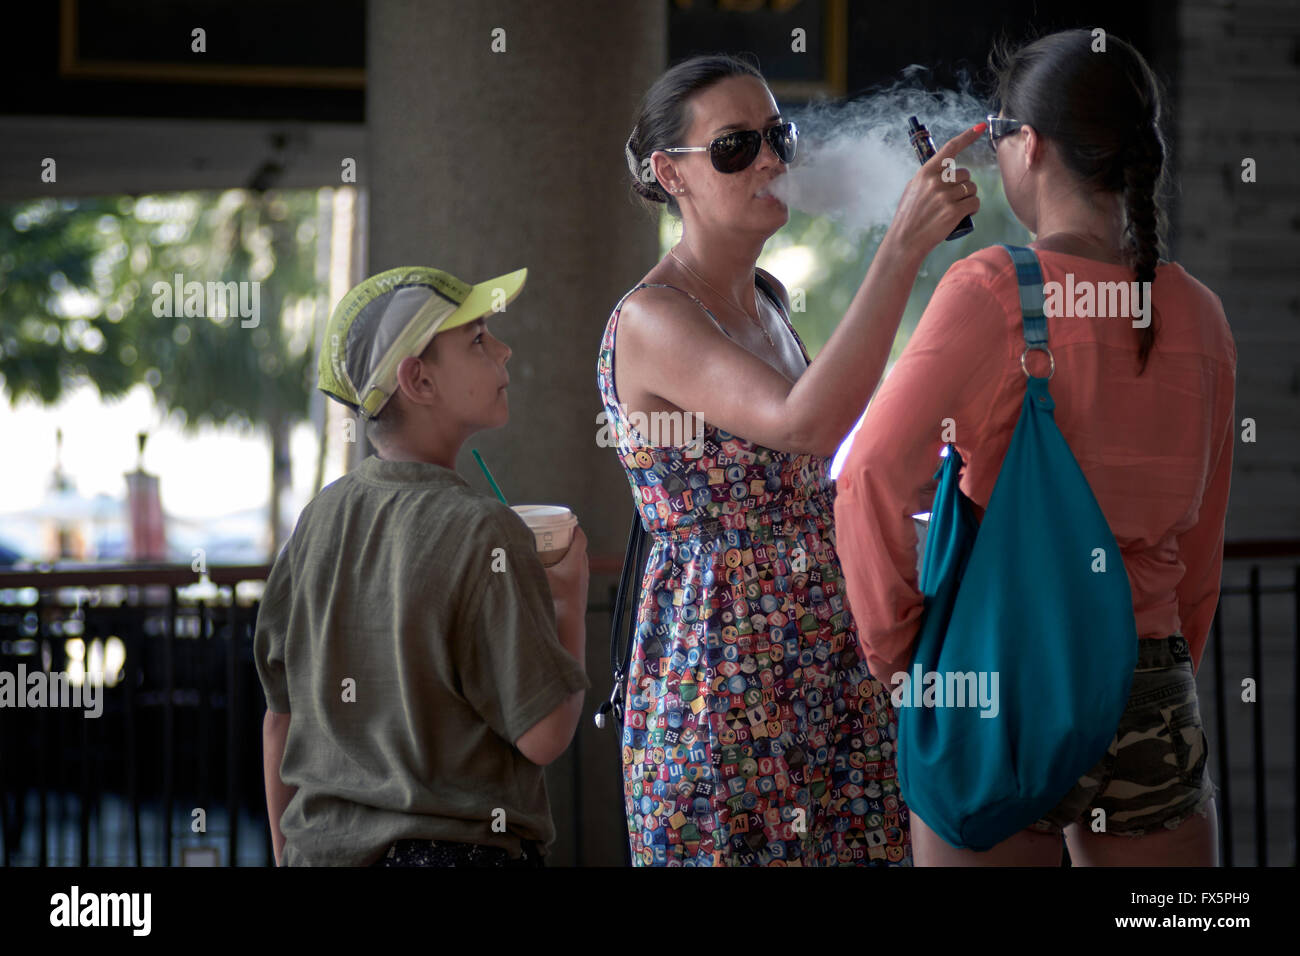 Passives Rauchen. Mutter e Zigarette rauchen und blasen Rauch in das Gesicht des Kindes. Stockfoto